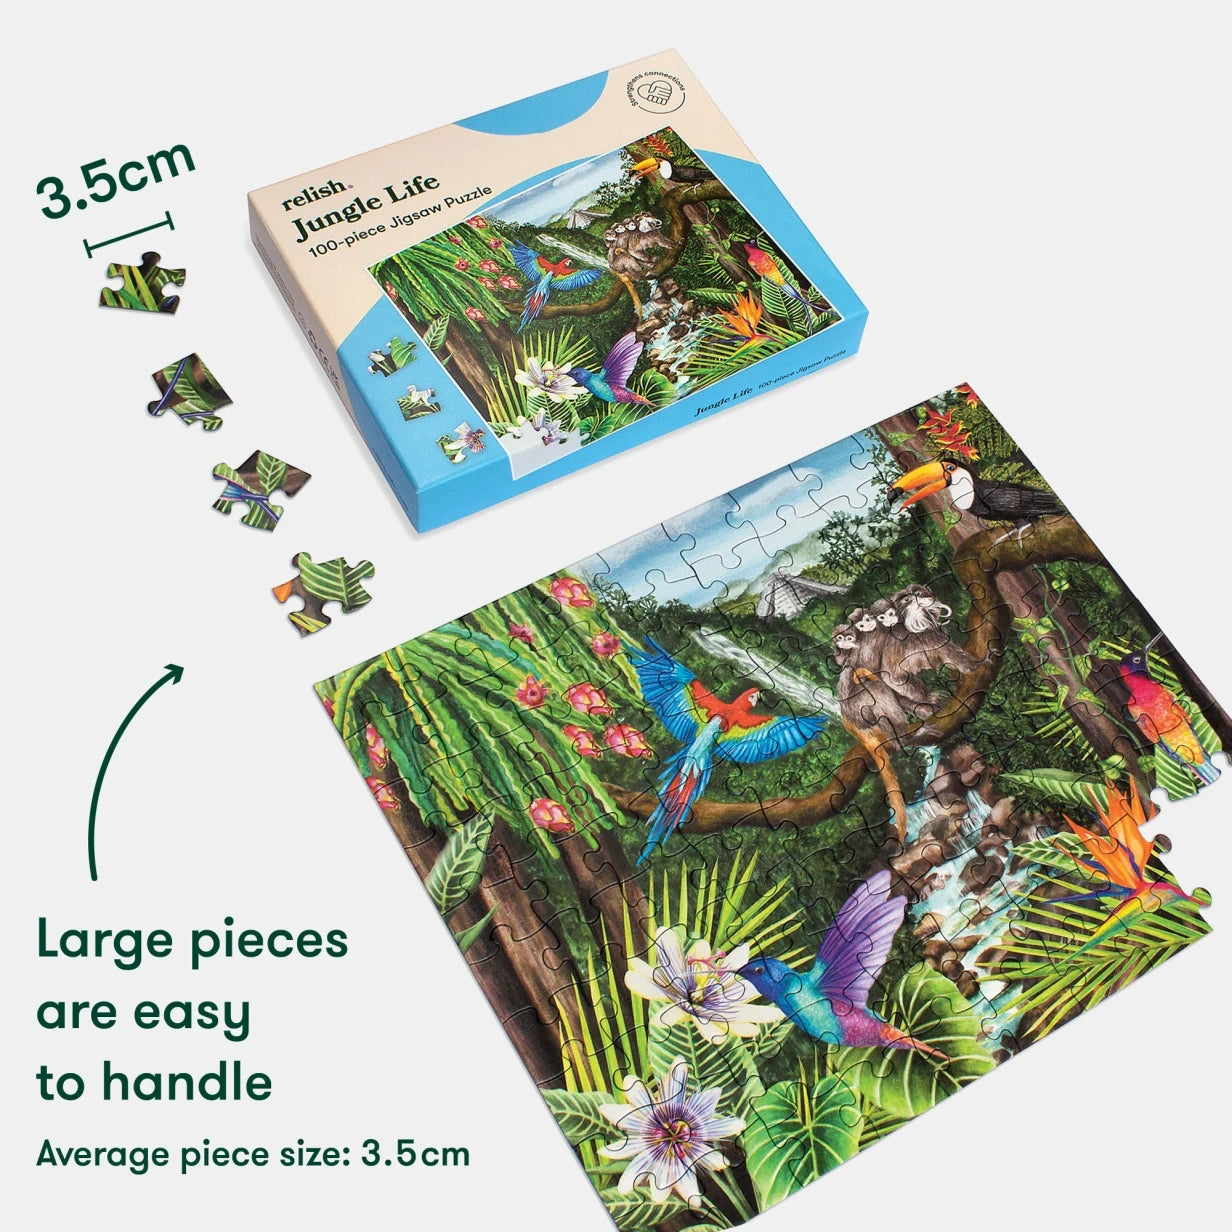 100-teiliges Puzzle - Jungle Life